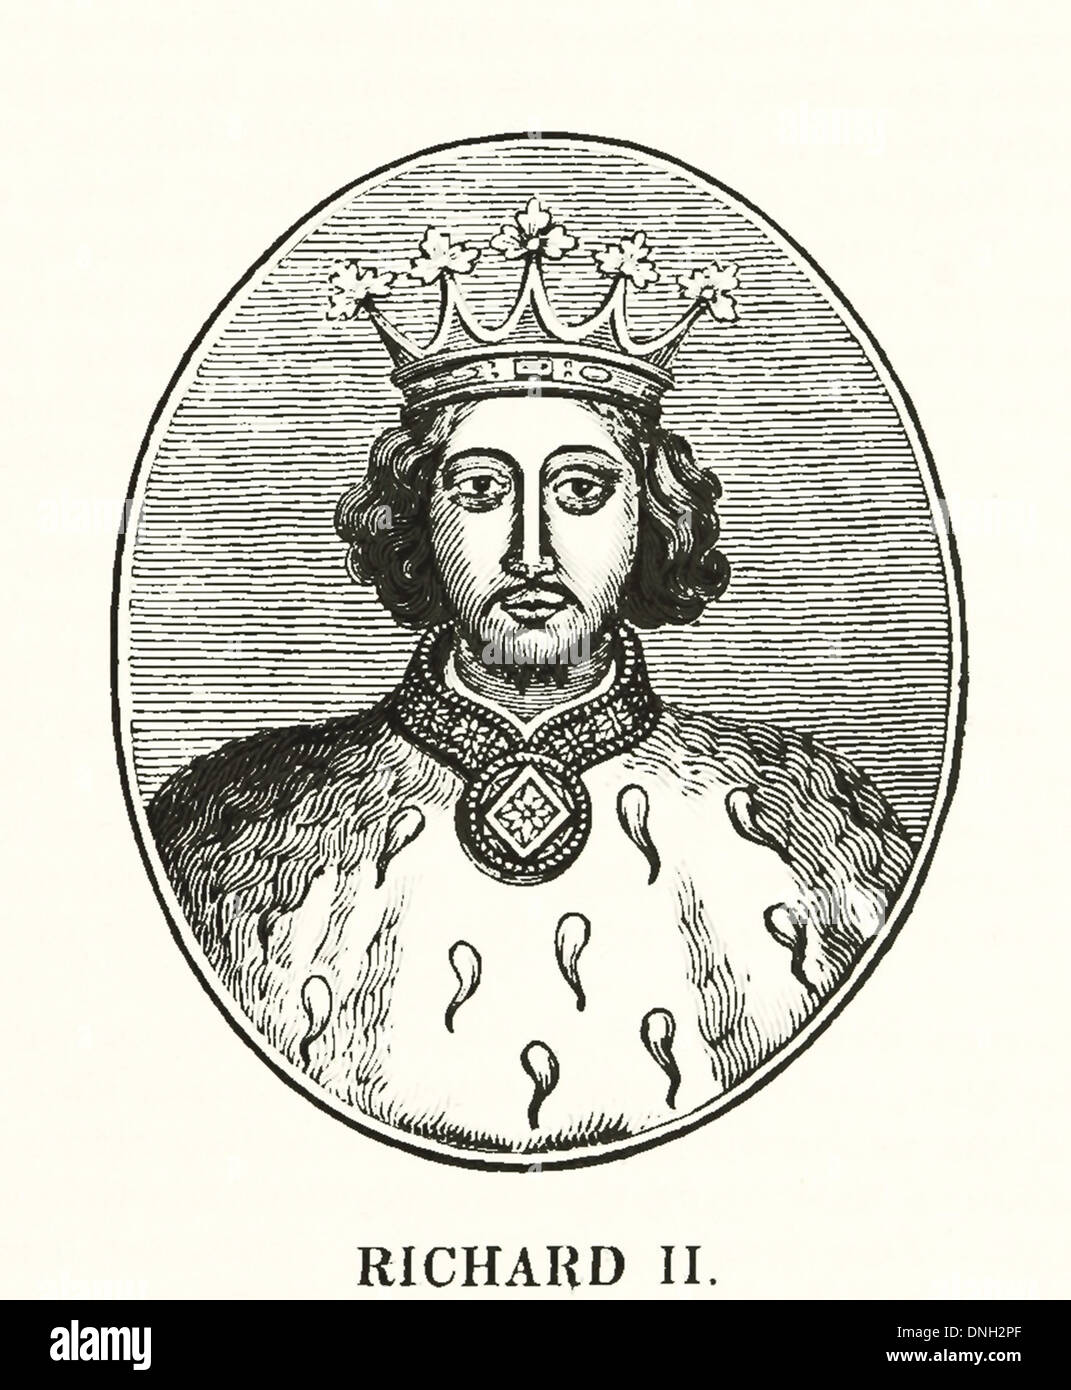 Richard II (6 janvier 1367 - ca. 14 février 1400) fut roi de France de 1377 jusqu'à son renversement en 1399 Banque D'Images